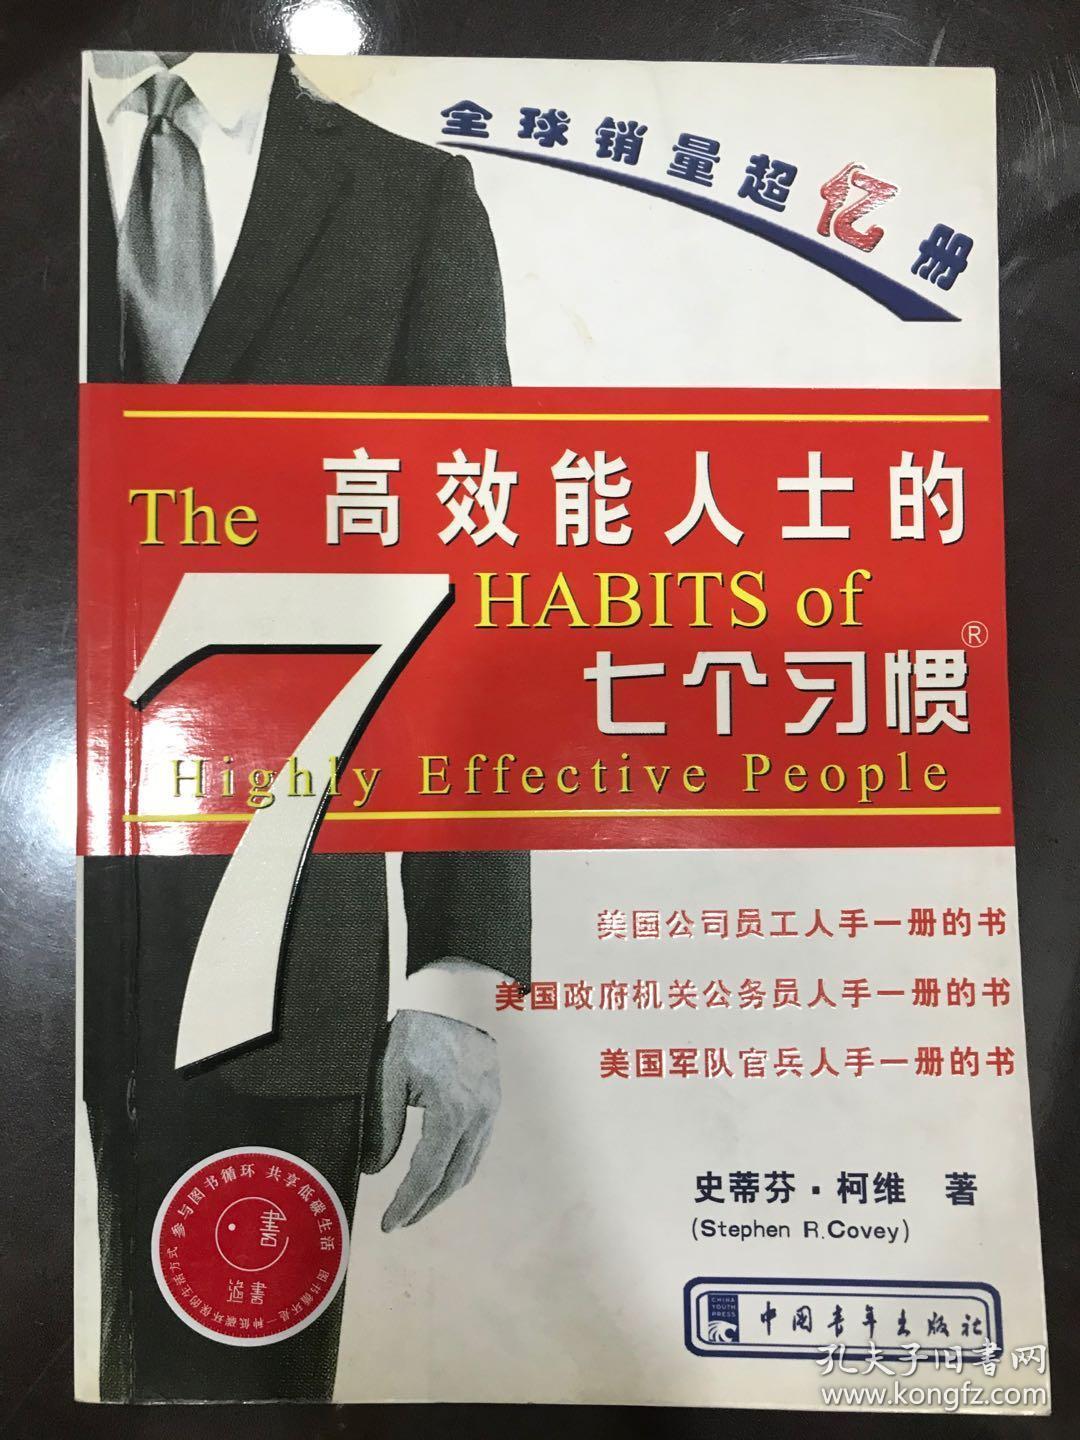 高效能人士的七个习惯 原版书名The Seven Habits of Highly Effective People [美]柯维 著  顾淑馨 常青 译 中国青年出版社